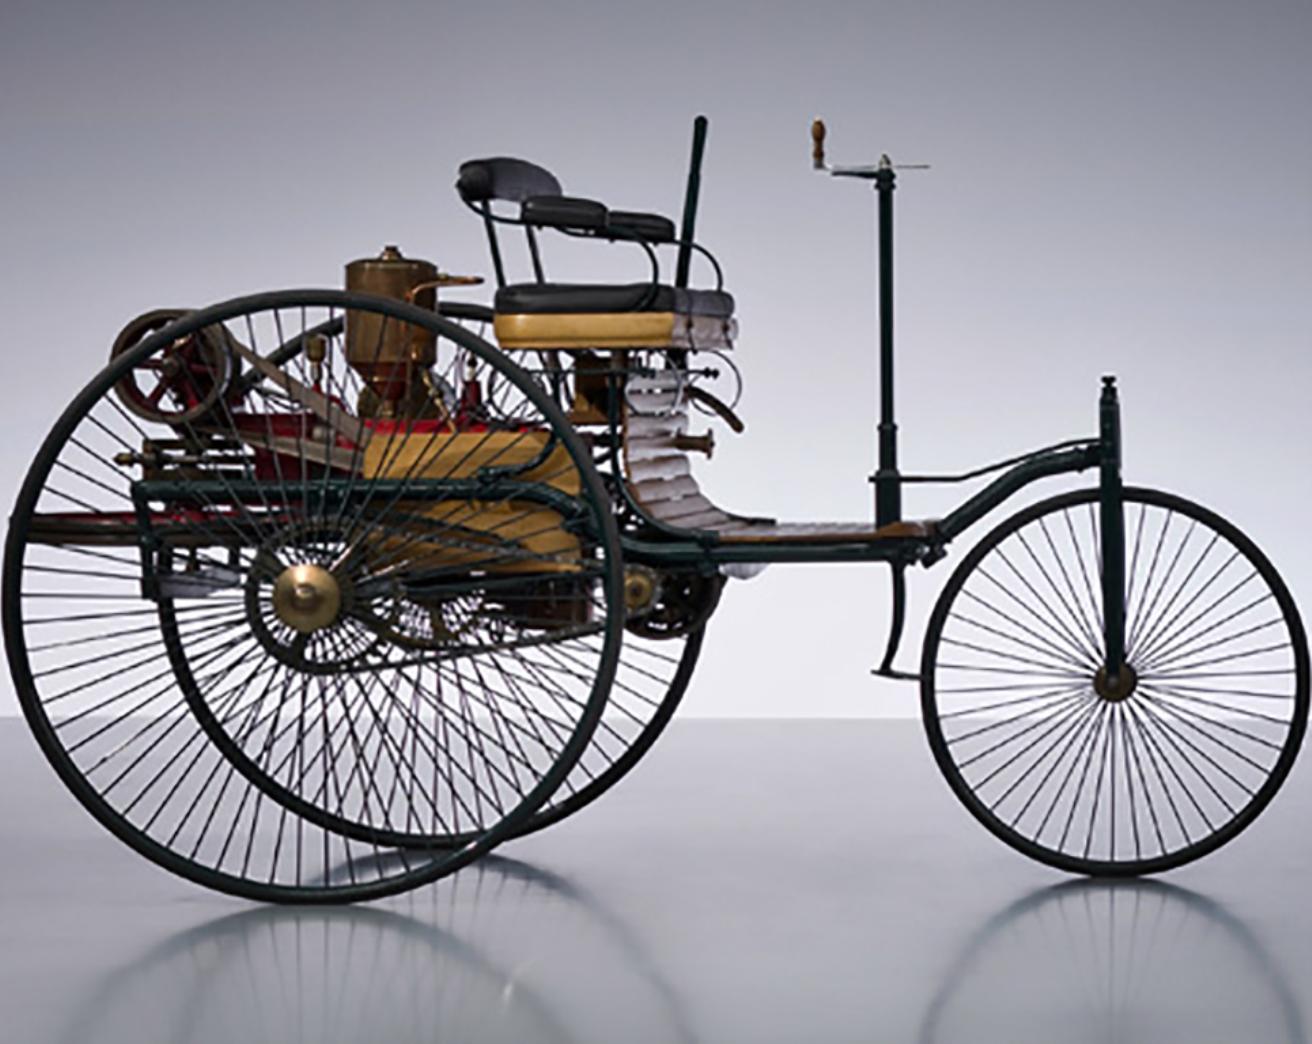 Karl Benz patenta el primer automóvil con tracción por gasolina